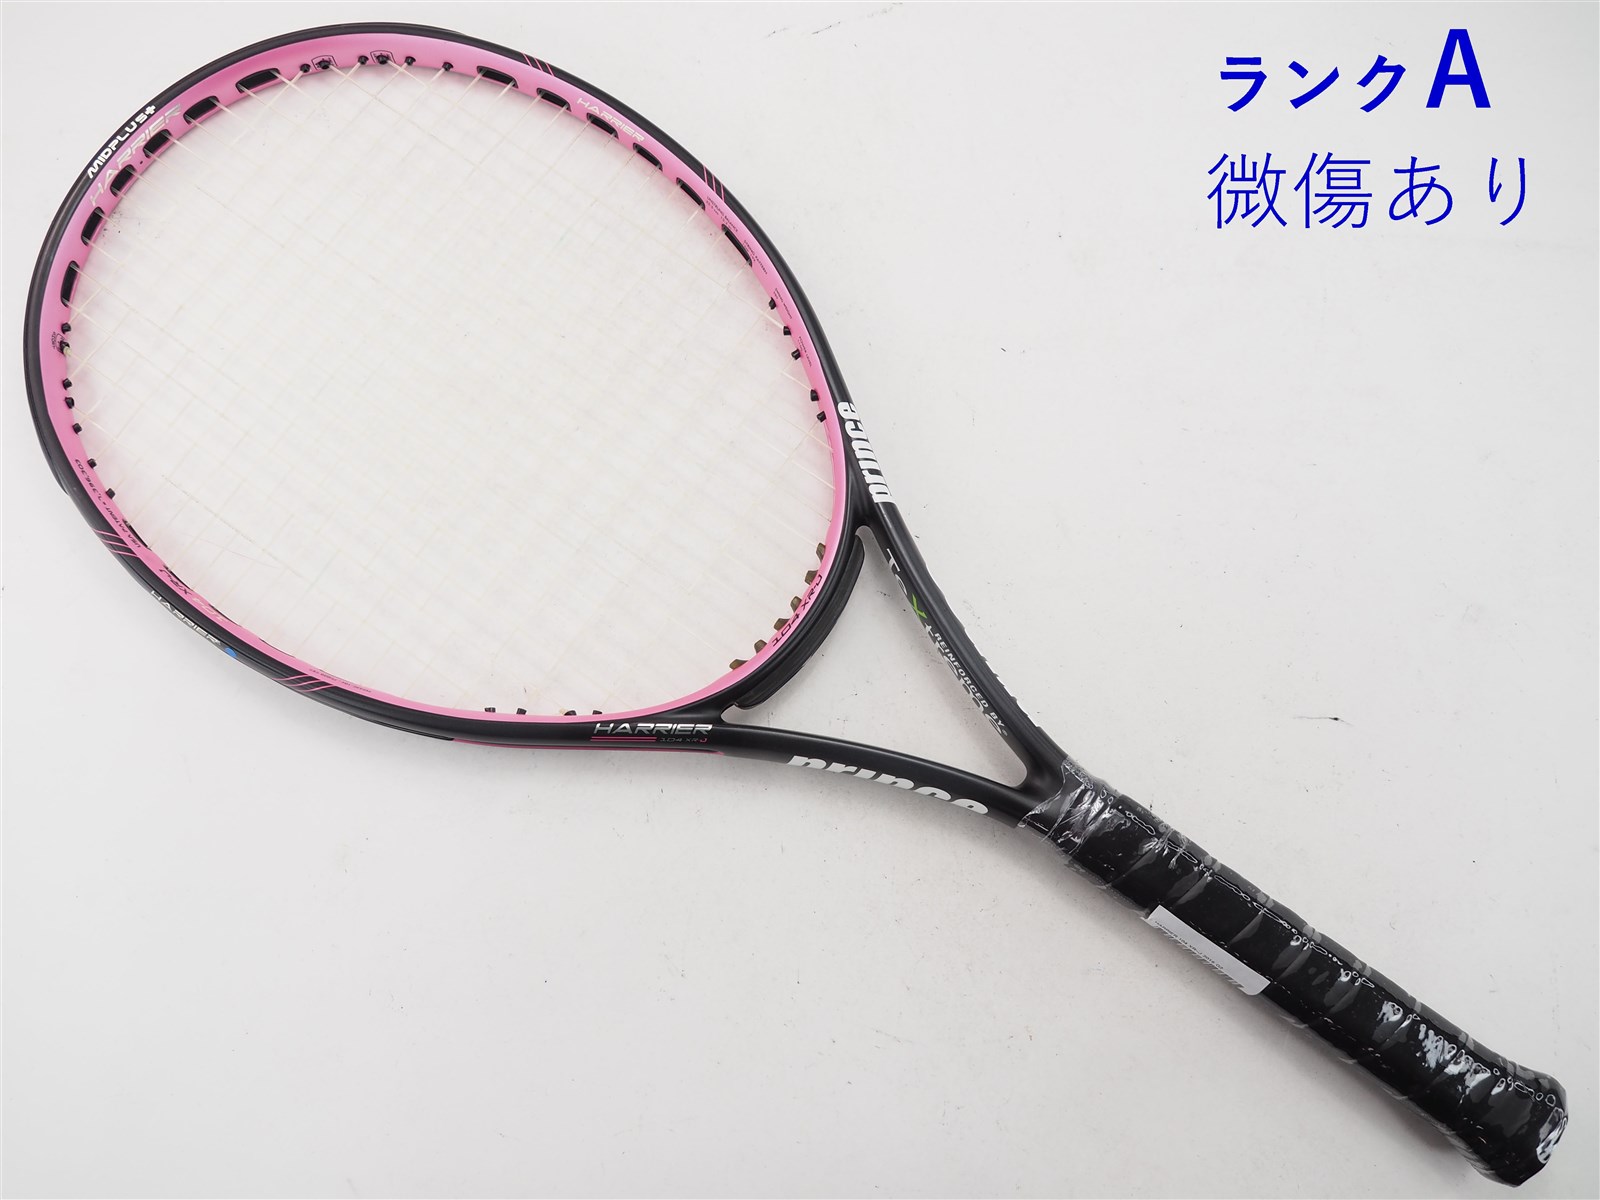 7,546円PRINCE BEAST o3 98 2018 プリンス ビースト テニス 硬式